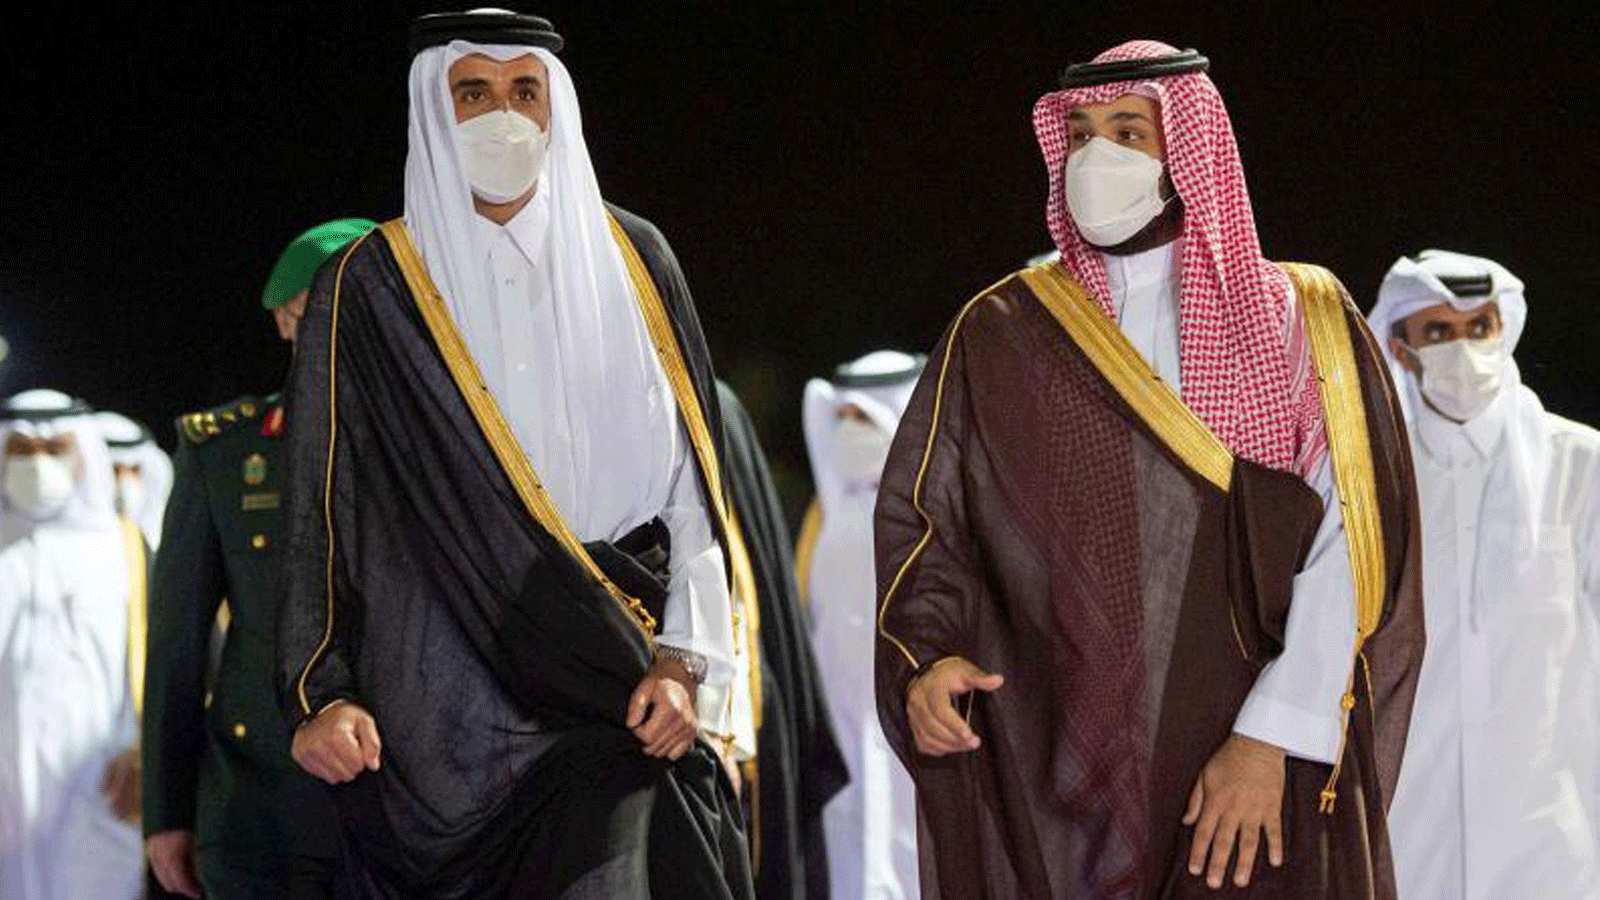 ولي العهد السعودي الأمير محمد بن سلمان (إلى اليمين) يستقبل أمير قطر الشيخ تميم بن حمد آل ثاني لدى وصوله إلى مدينة جدة المطلة على البحر الأحمر في 10 أيار/مايو 2021